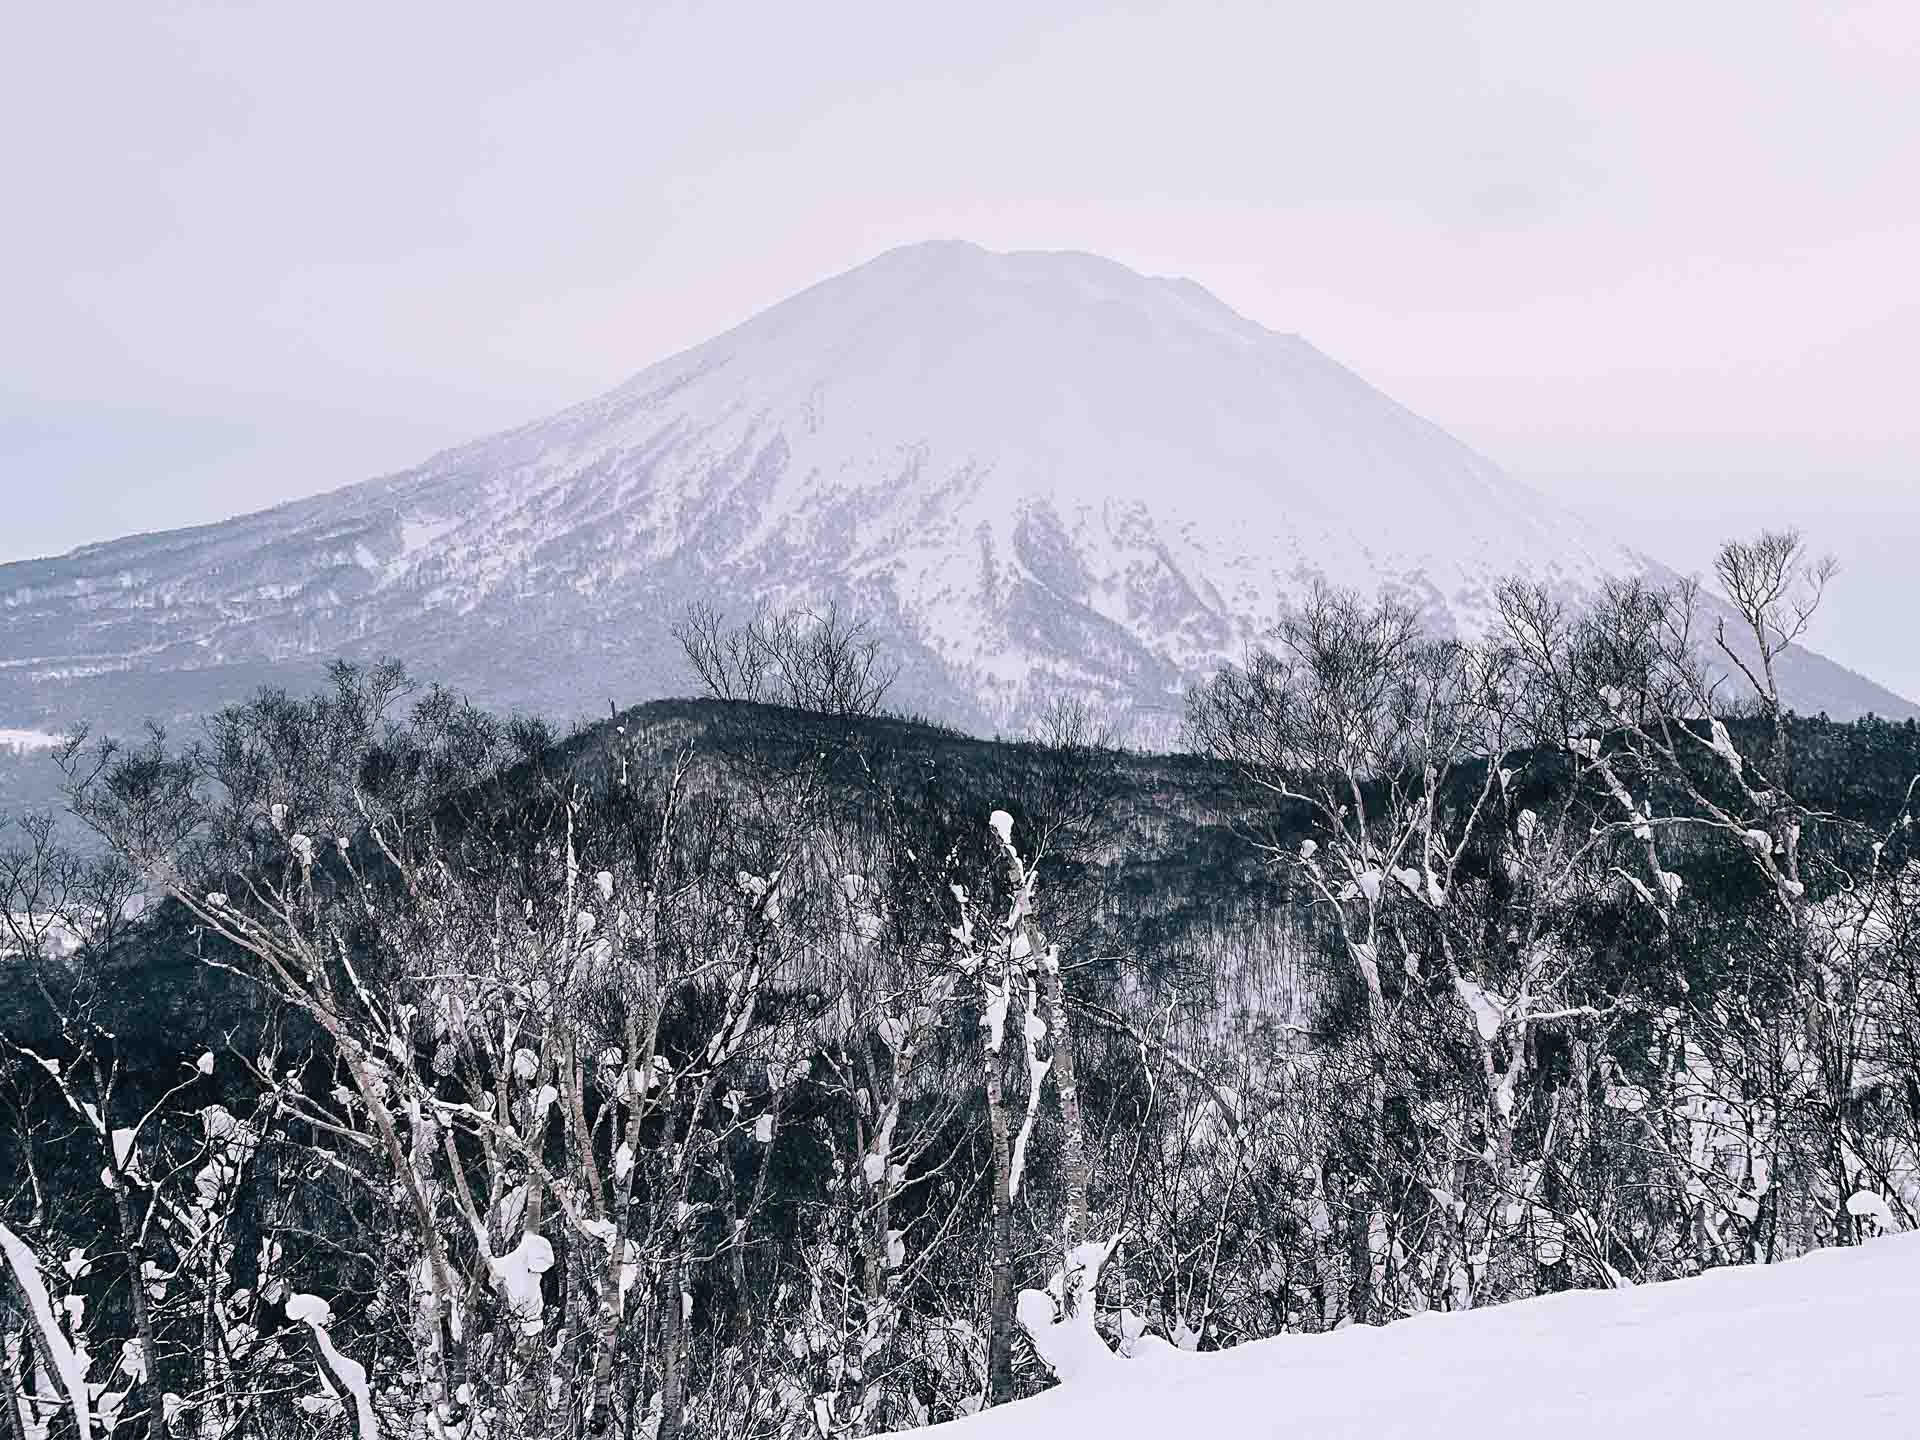 Skiing in Japan: Why Niseko Is Best For Beginners, Photo by Ally Burnie, skiing, japan, niseko, skiing guide, mount yotei